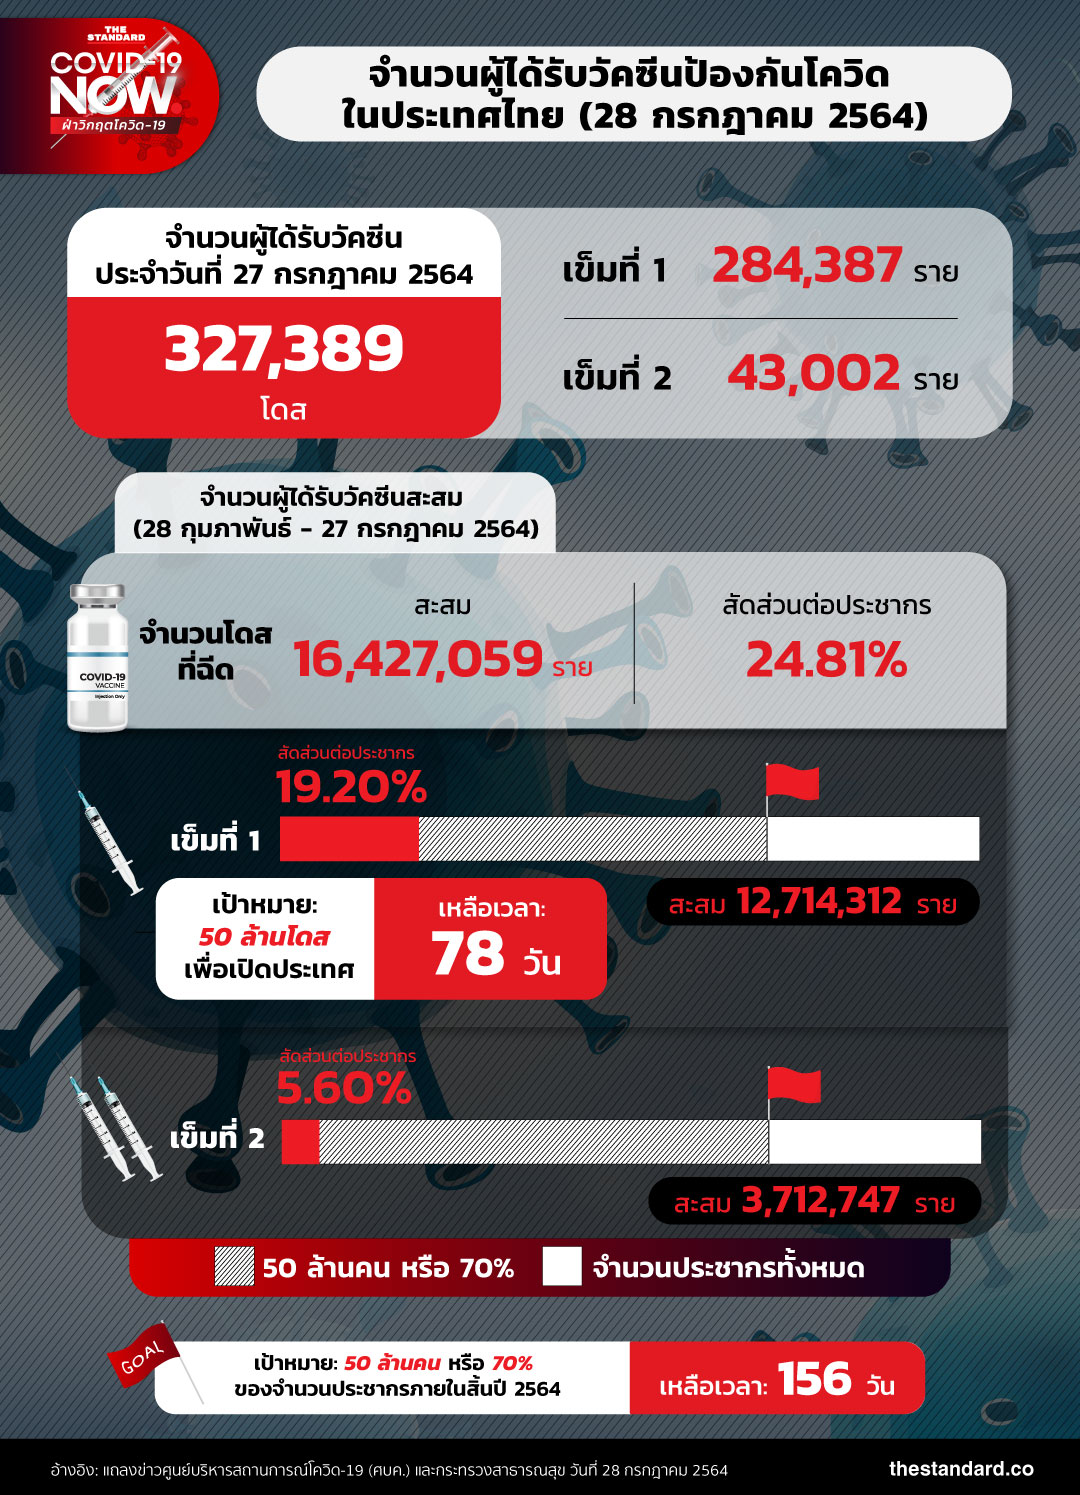 จำนวนผู้ได้รับวัคซีนโควิดในประเทศไทย (28 กรกฎาคม 2564)